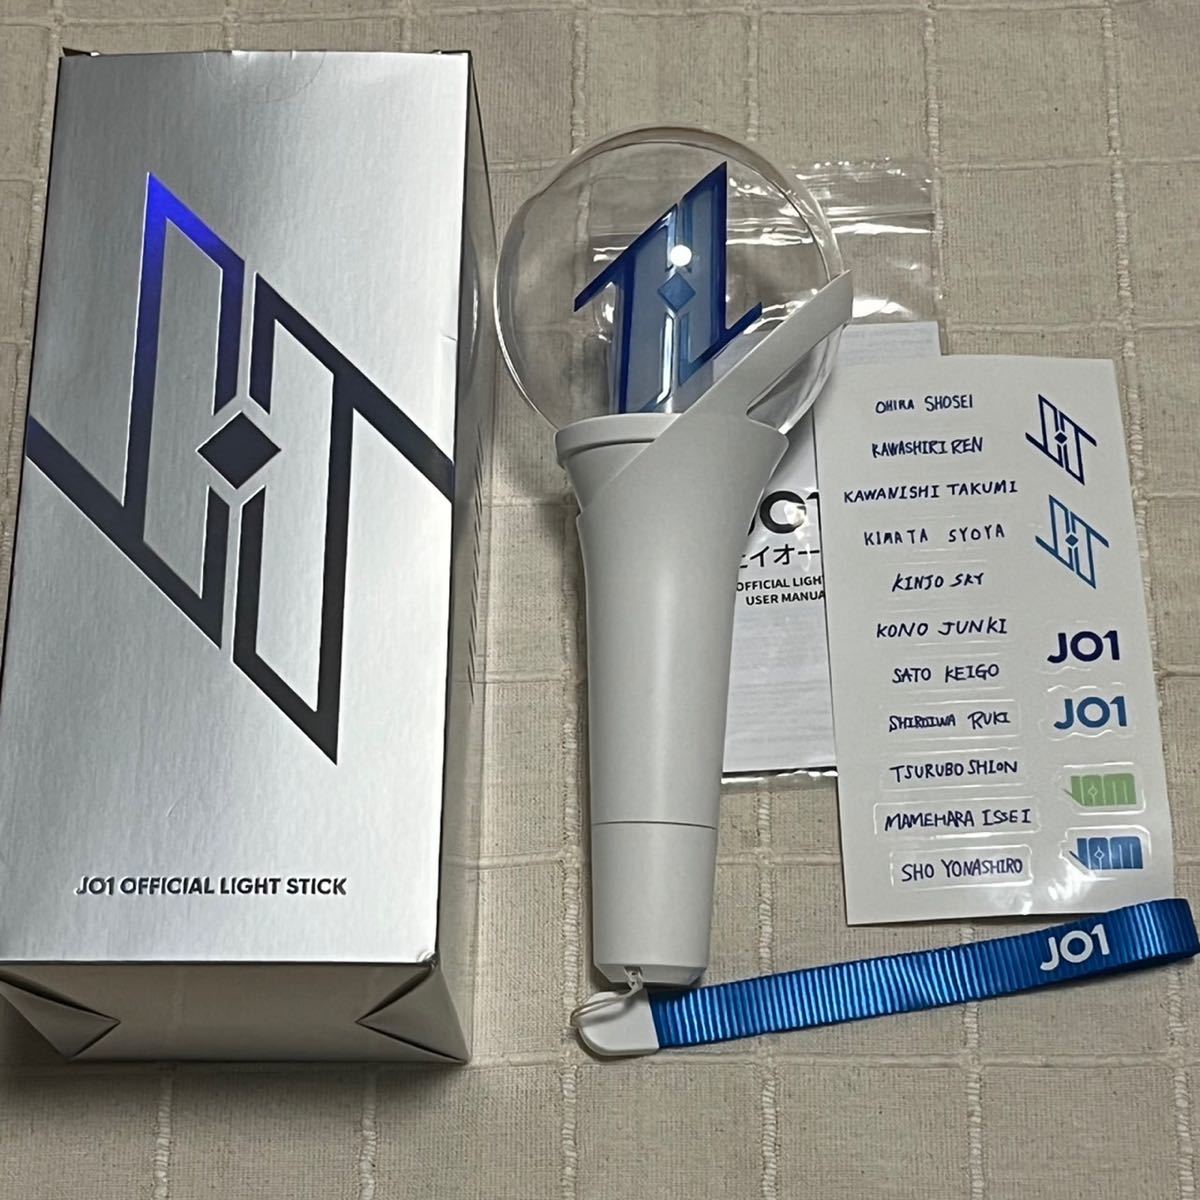 売れ筋ランキングも JO1 ペンライト official light stick K-POP/アジア